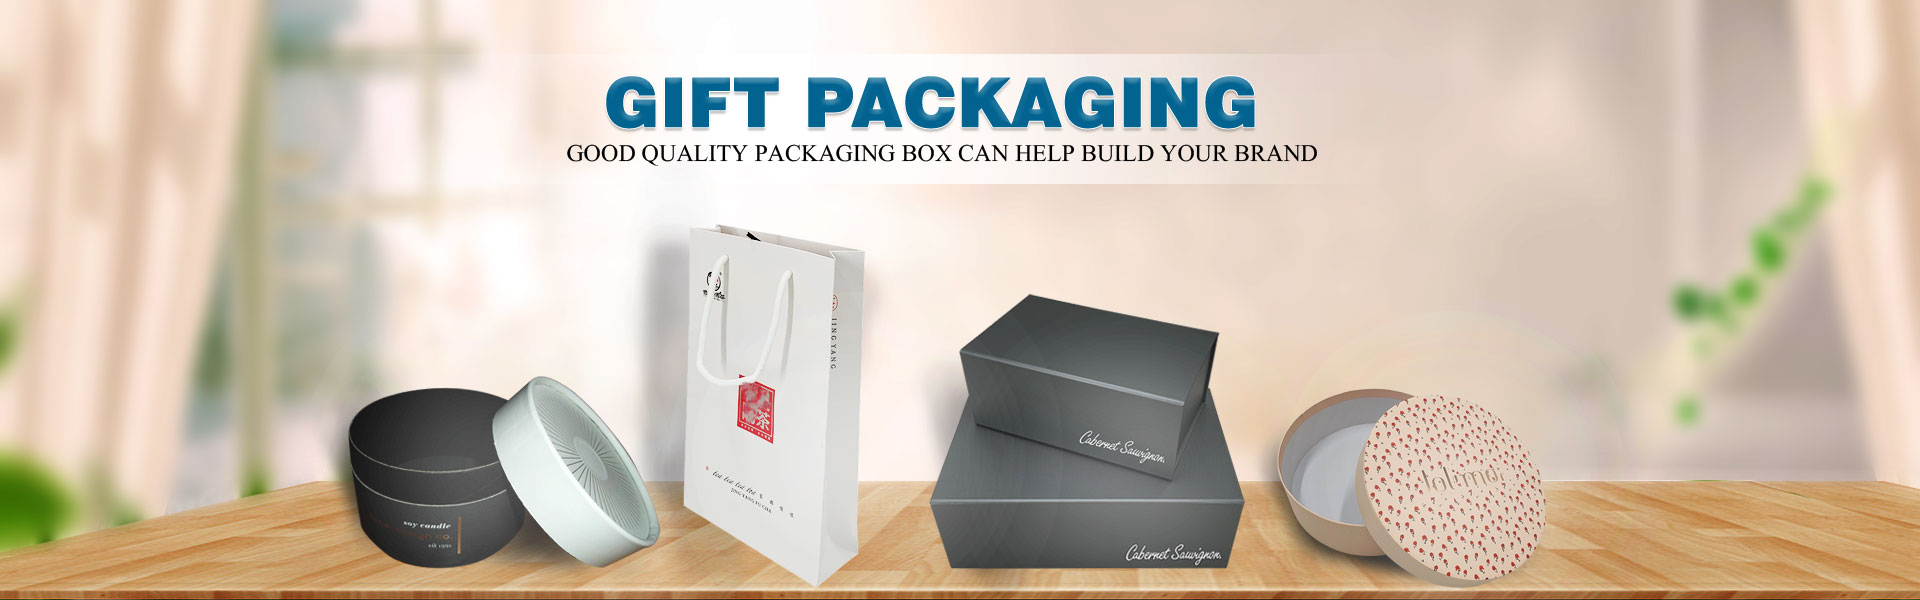 papírová krabice, dárková krabice, dort.,Dongguan Yisheng Packaging Co., Ltd